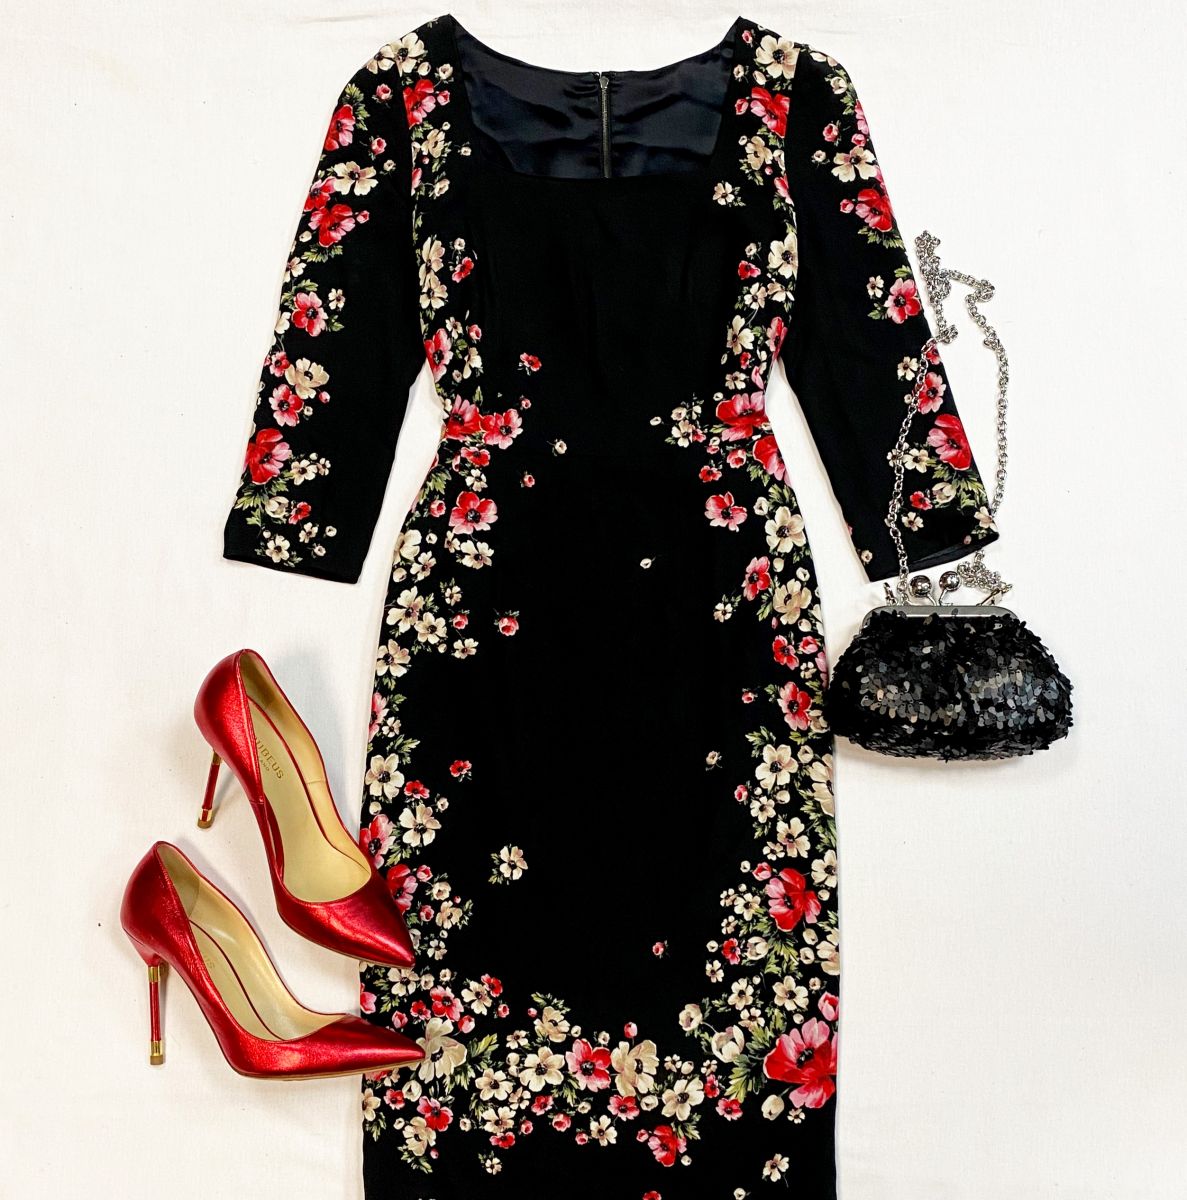 Платье Dolce Gabbana размер 40 цена 23 078 руб
Туфли Rubeus размер 41 цена 15 385 руб
Клатч Max Mara 